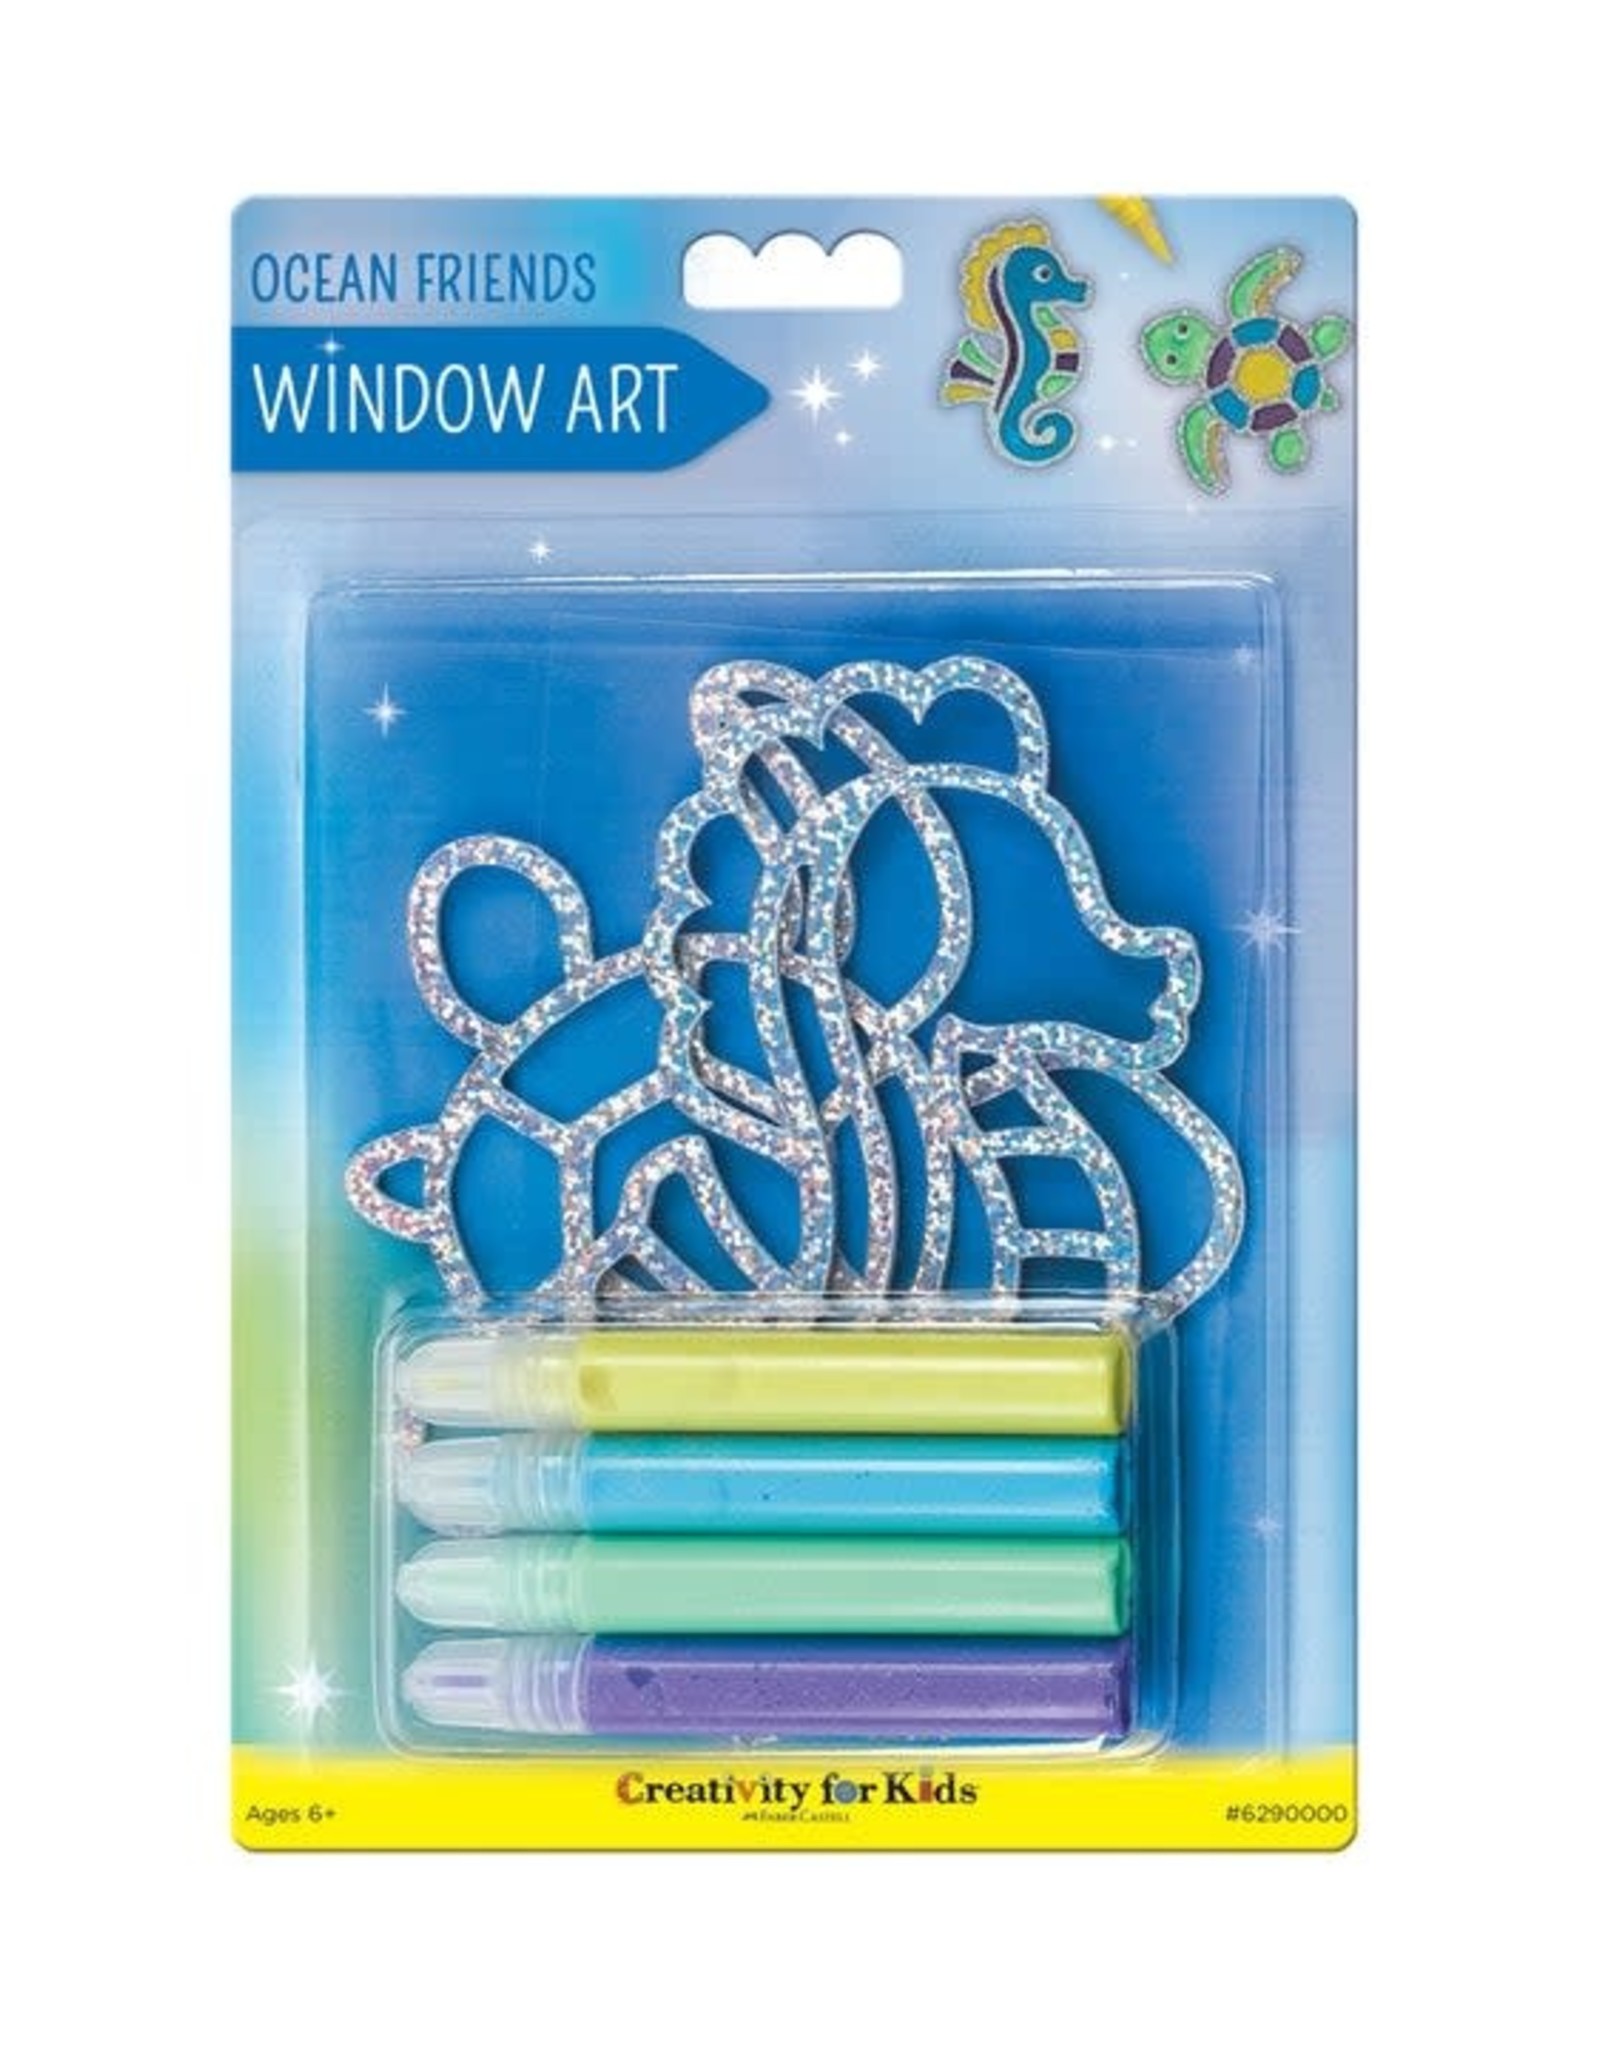 Creativity For Kids OCEAN FRIENDS WINDOW ART